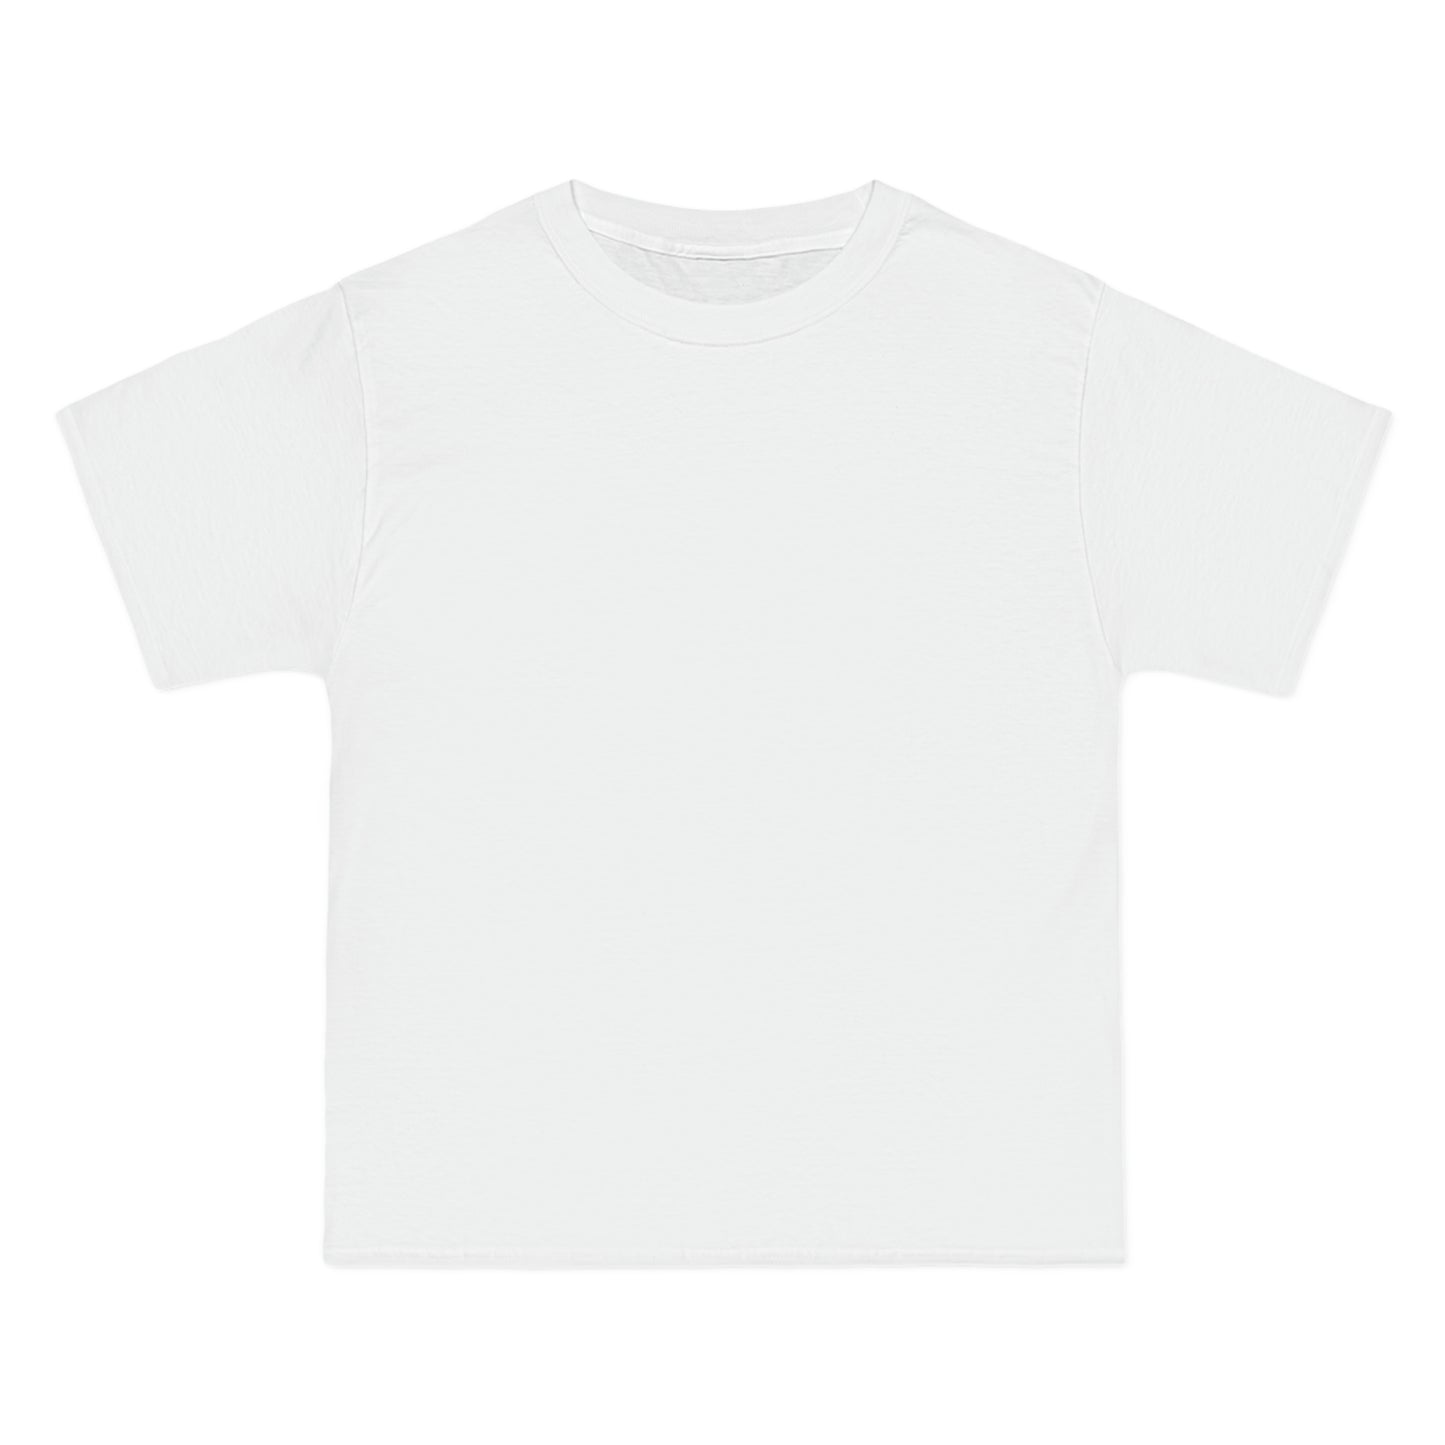 RISK TAKER Short-Sleeve T-Shirt